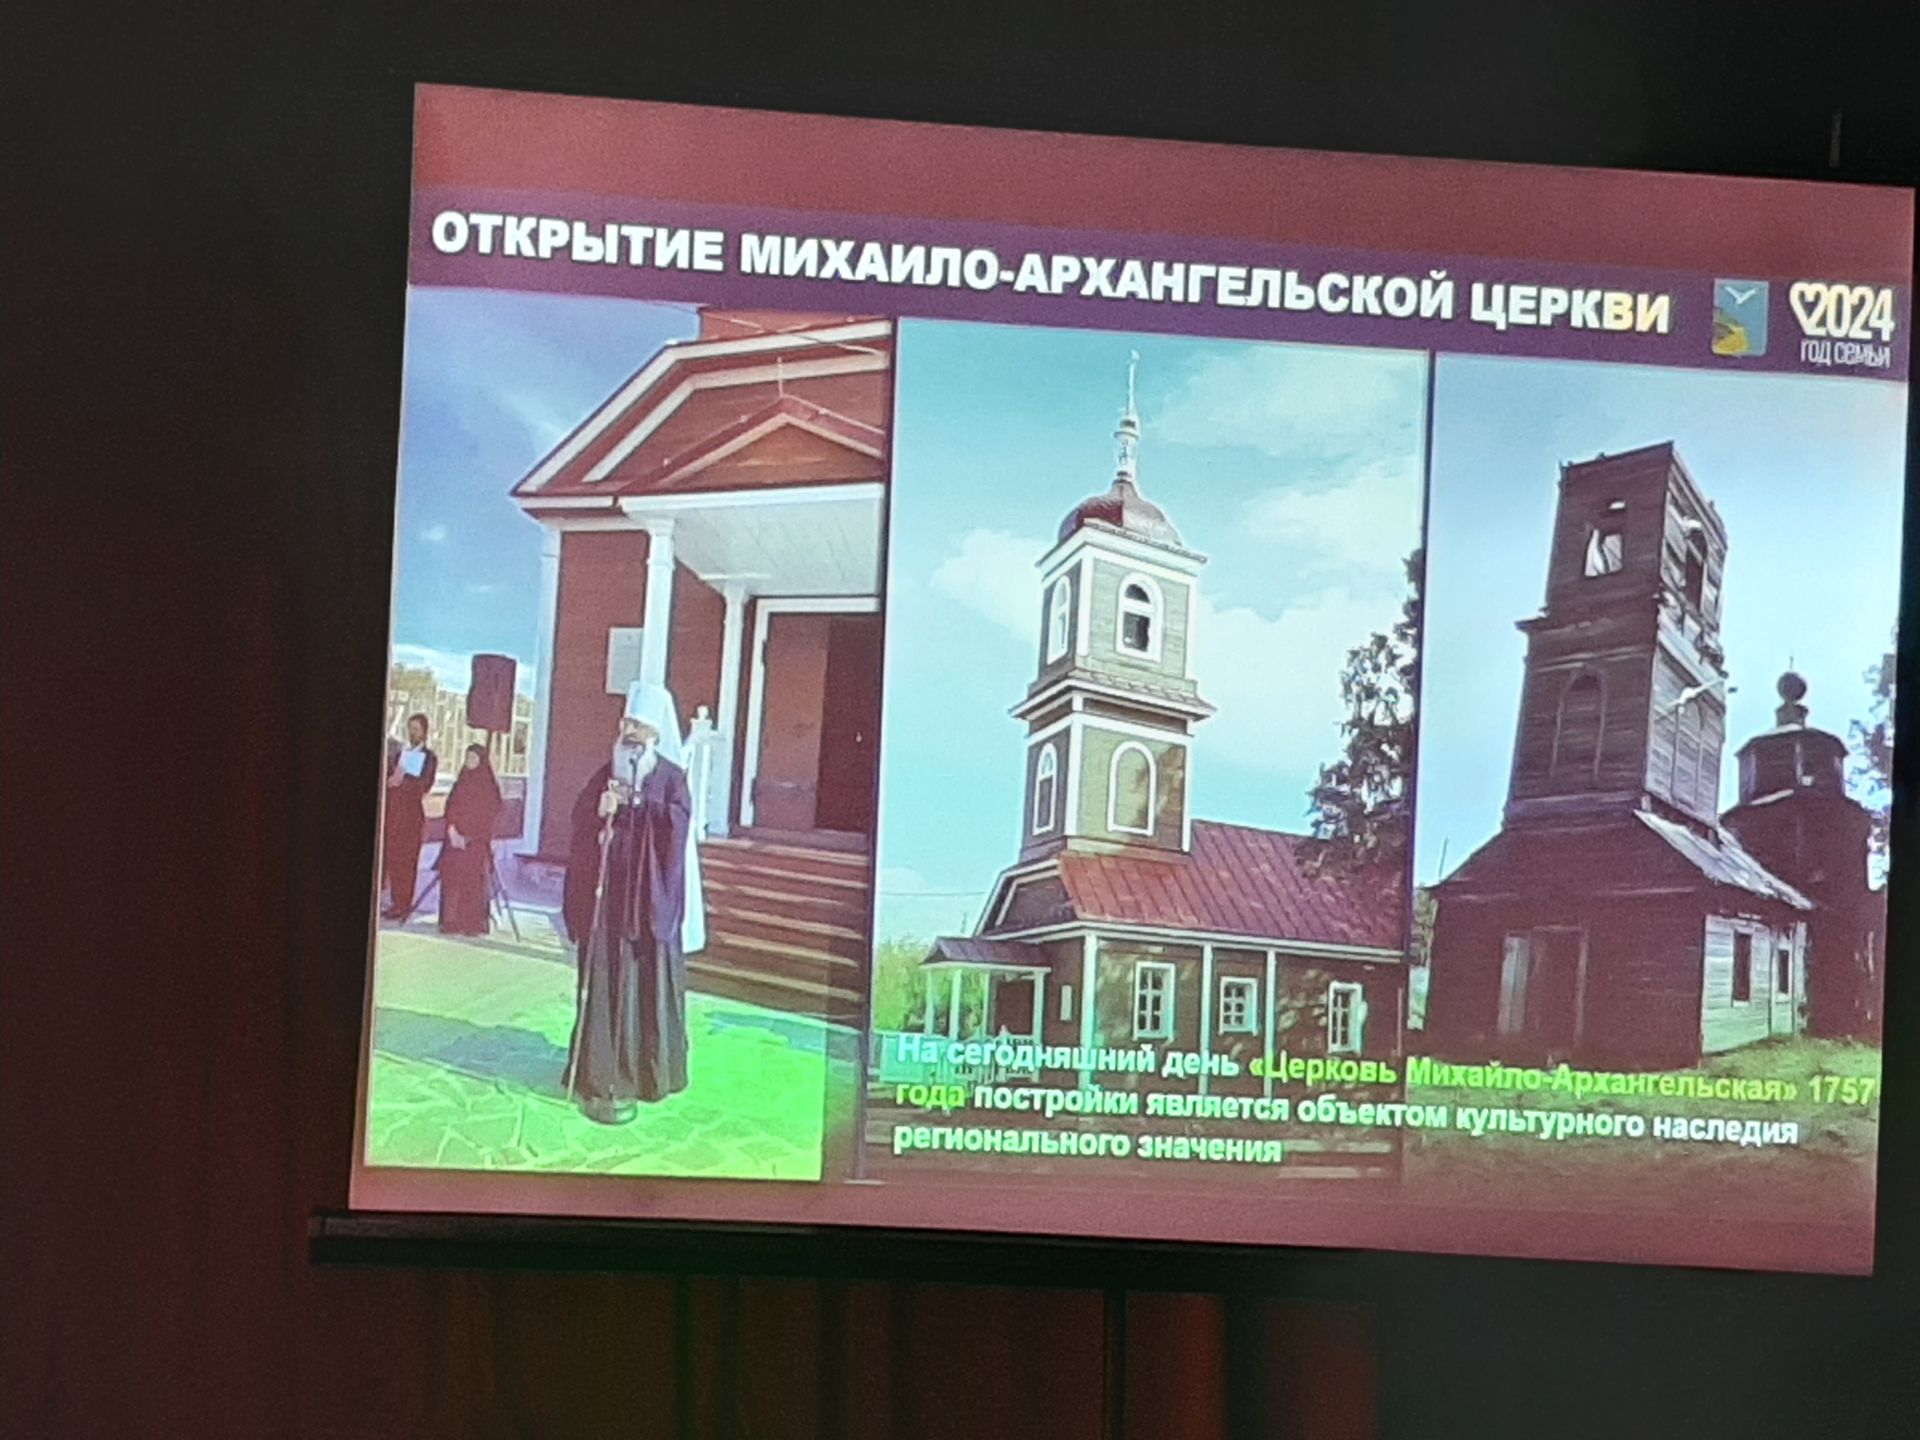 Сход граждан прошел в Большесалтыковском сельском поселении